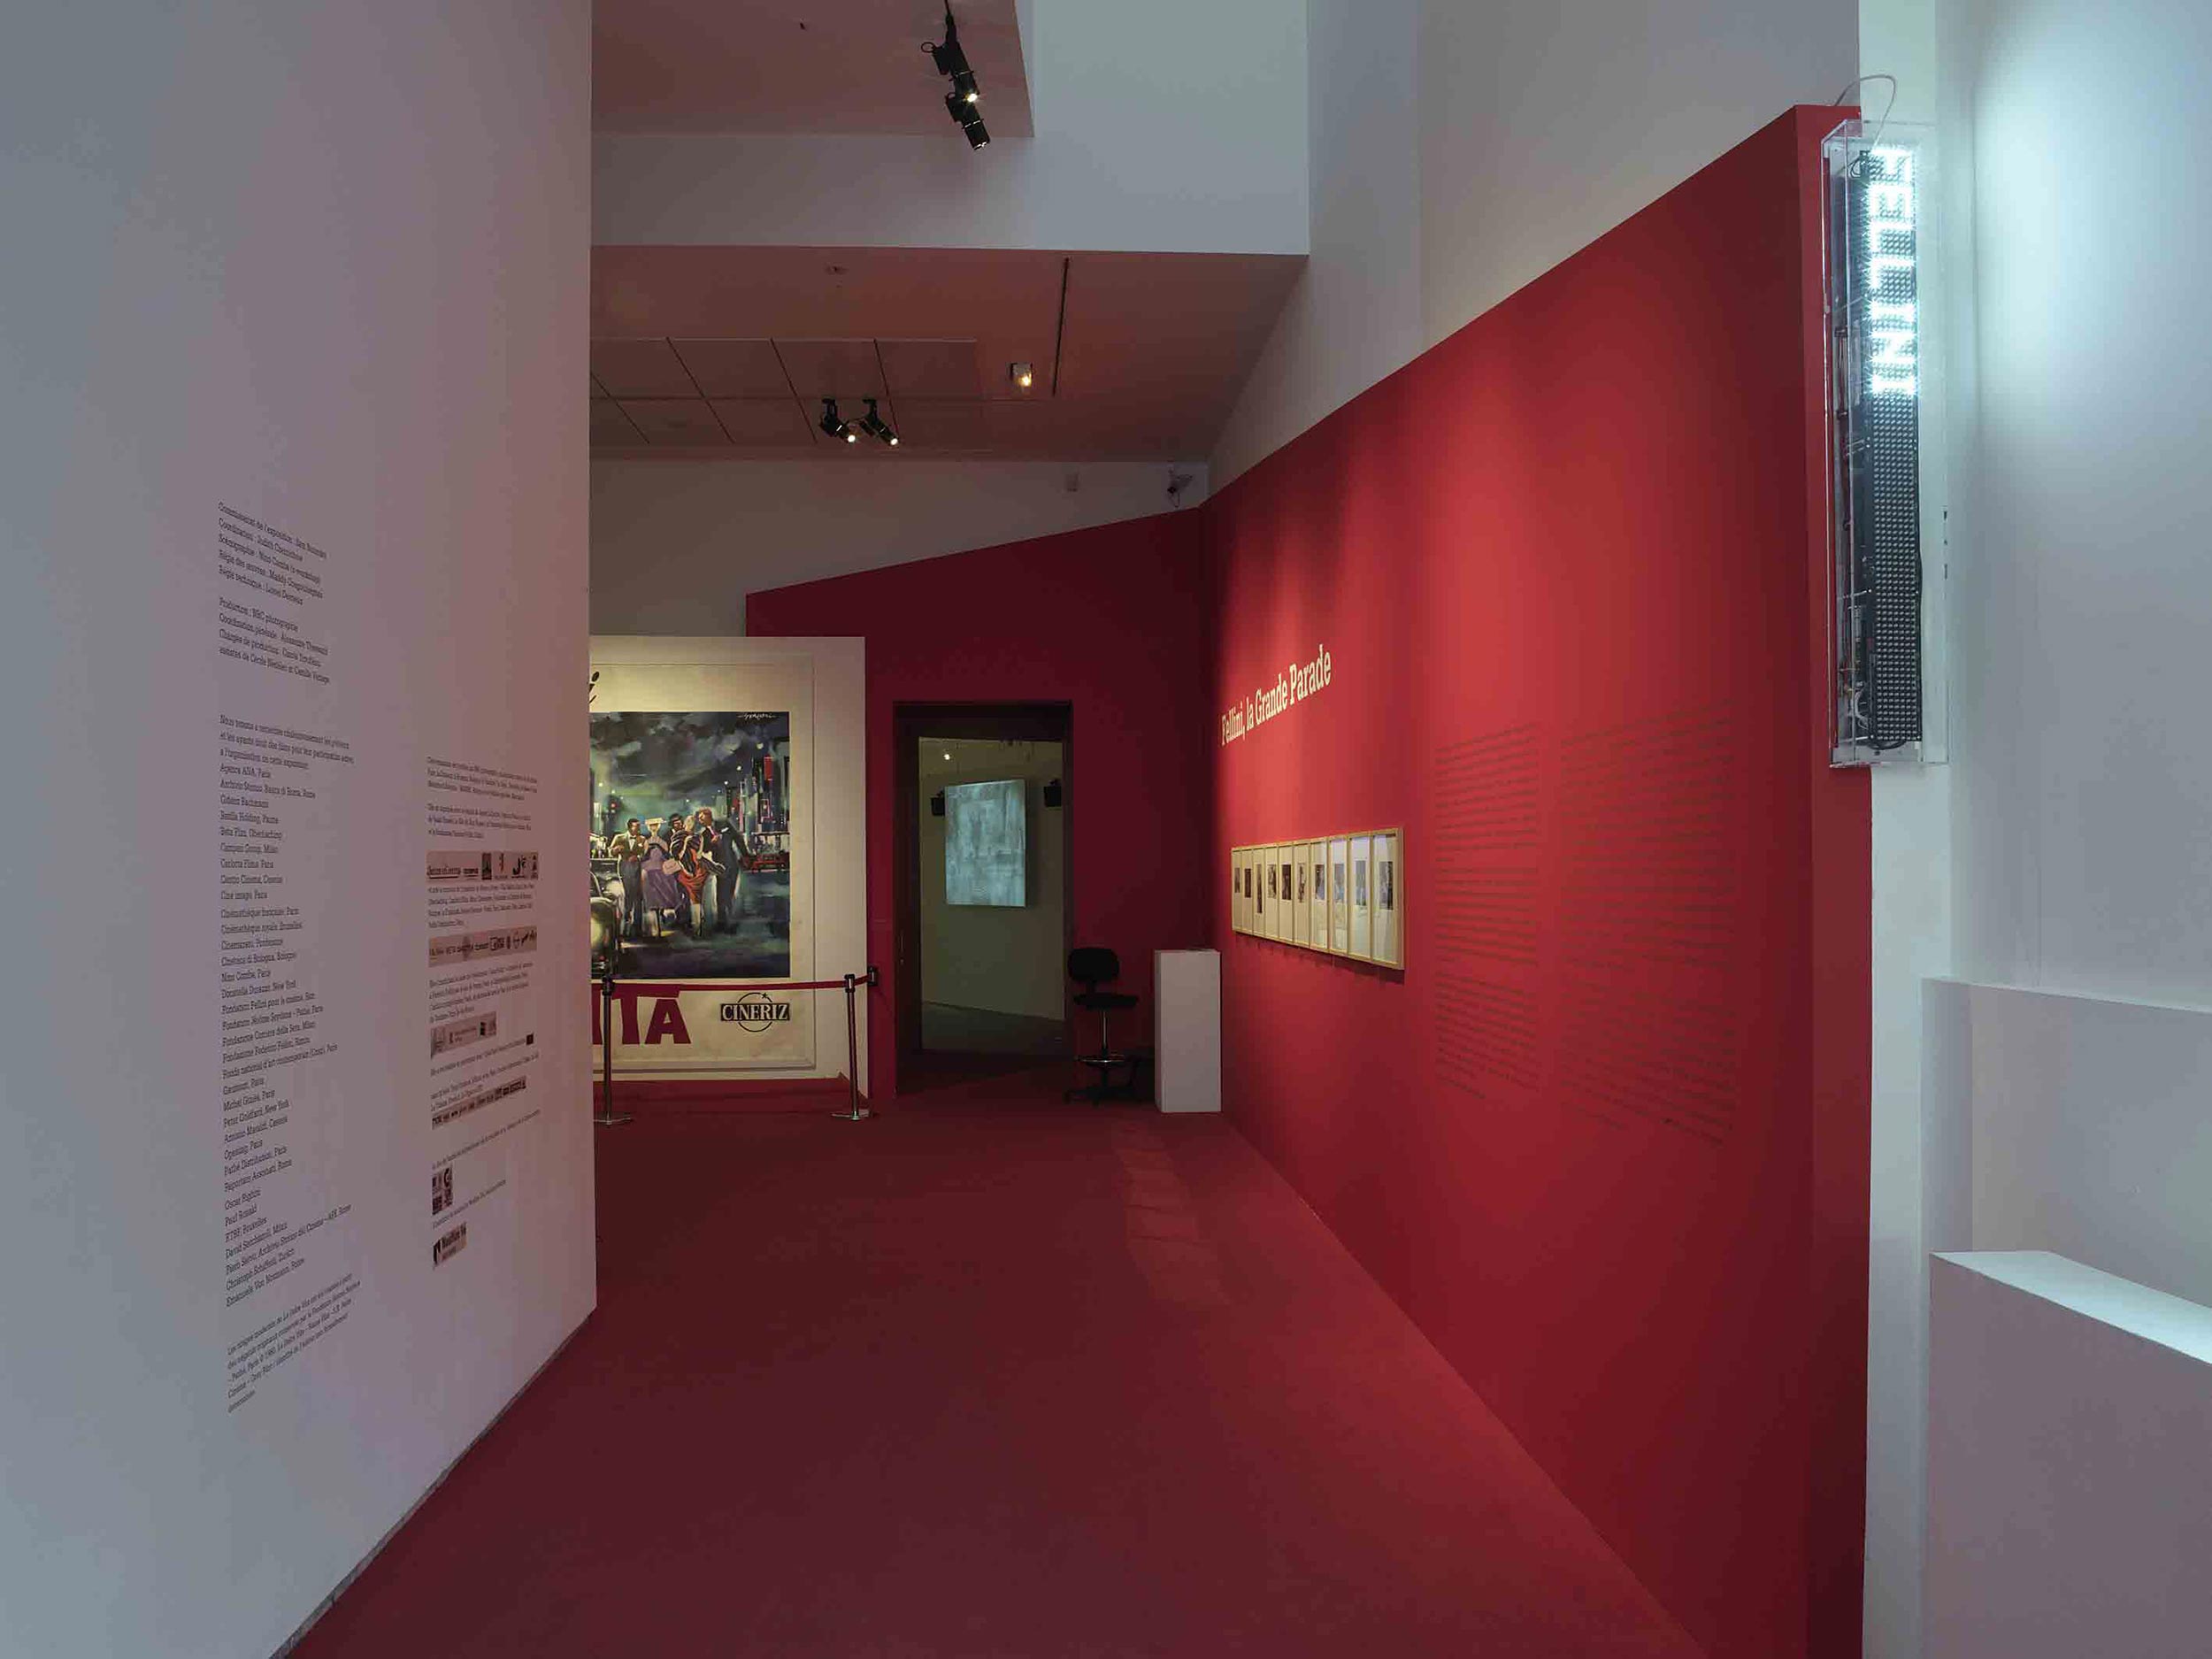 Vue de l'exposition <em>Fellini, la Grande Parade</em>